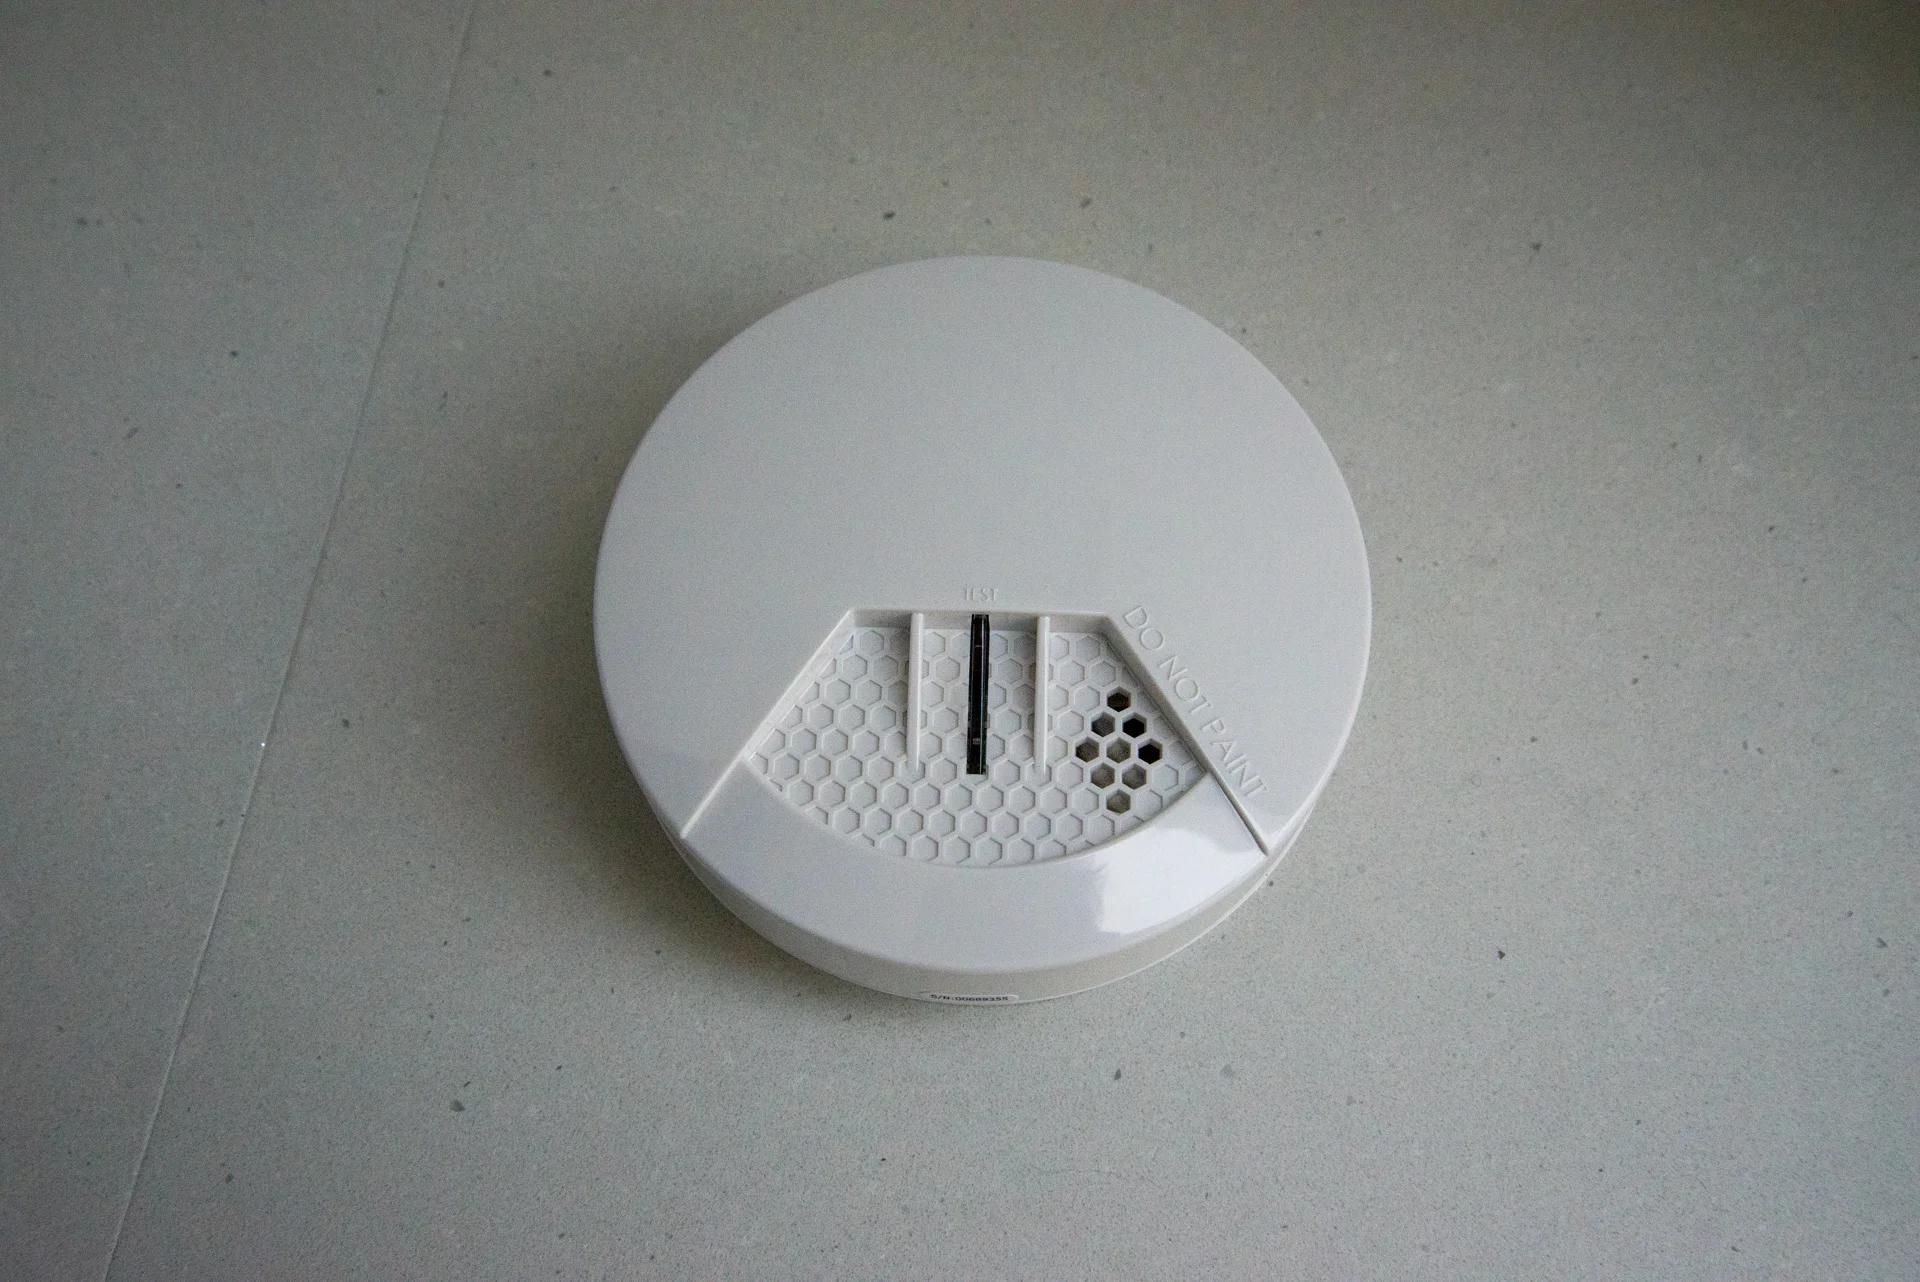 How To Set Up A SimpliSafe Smoke Detector